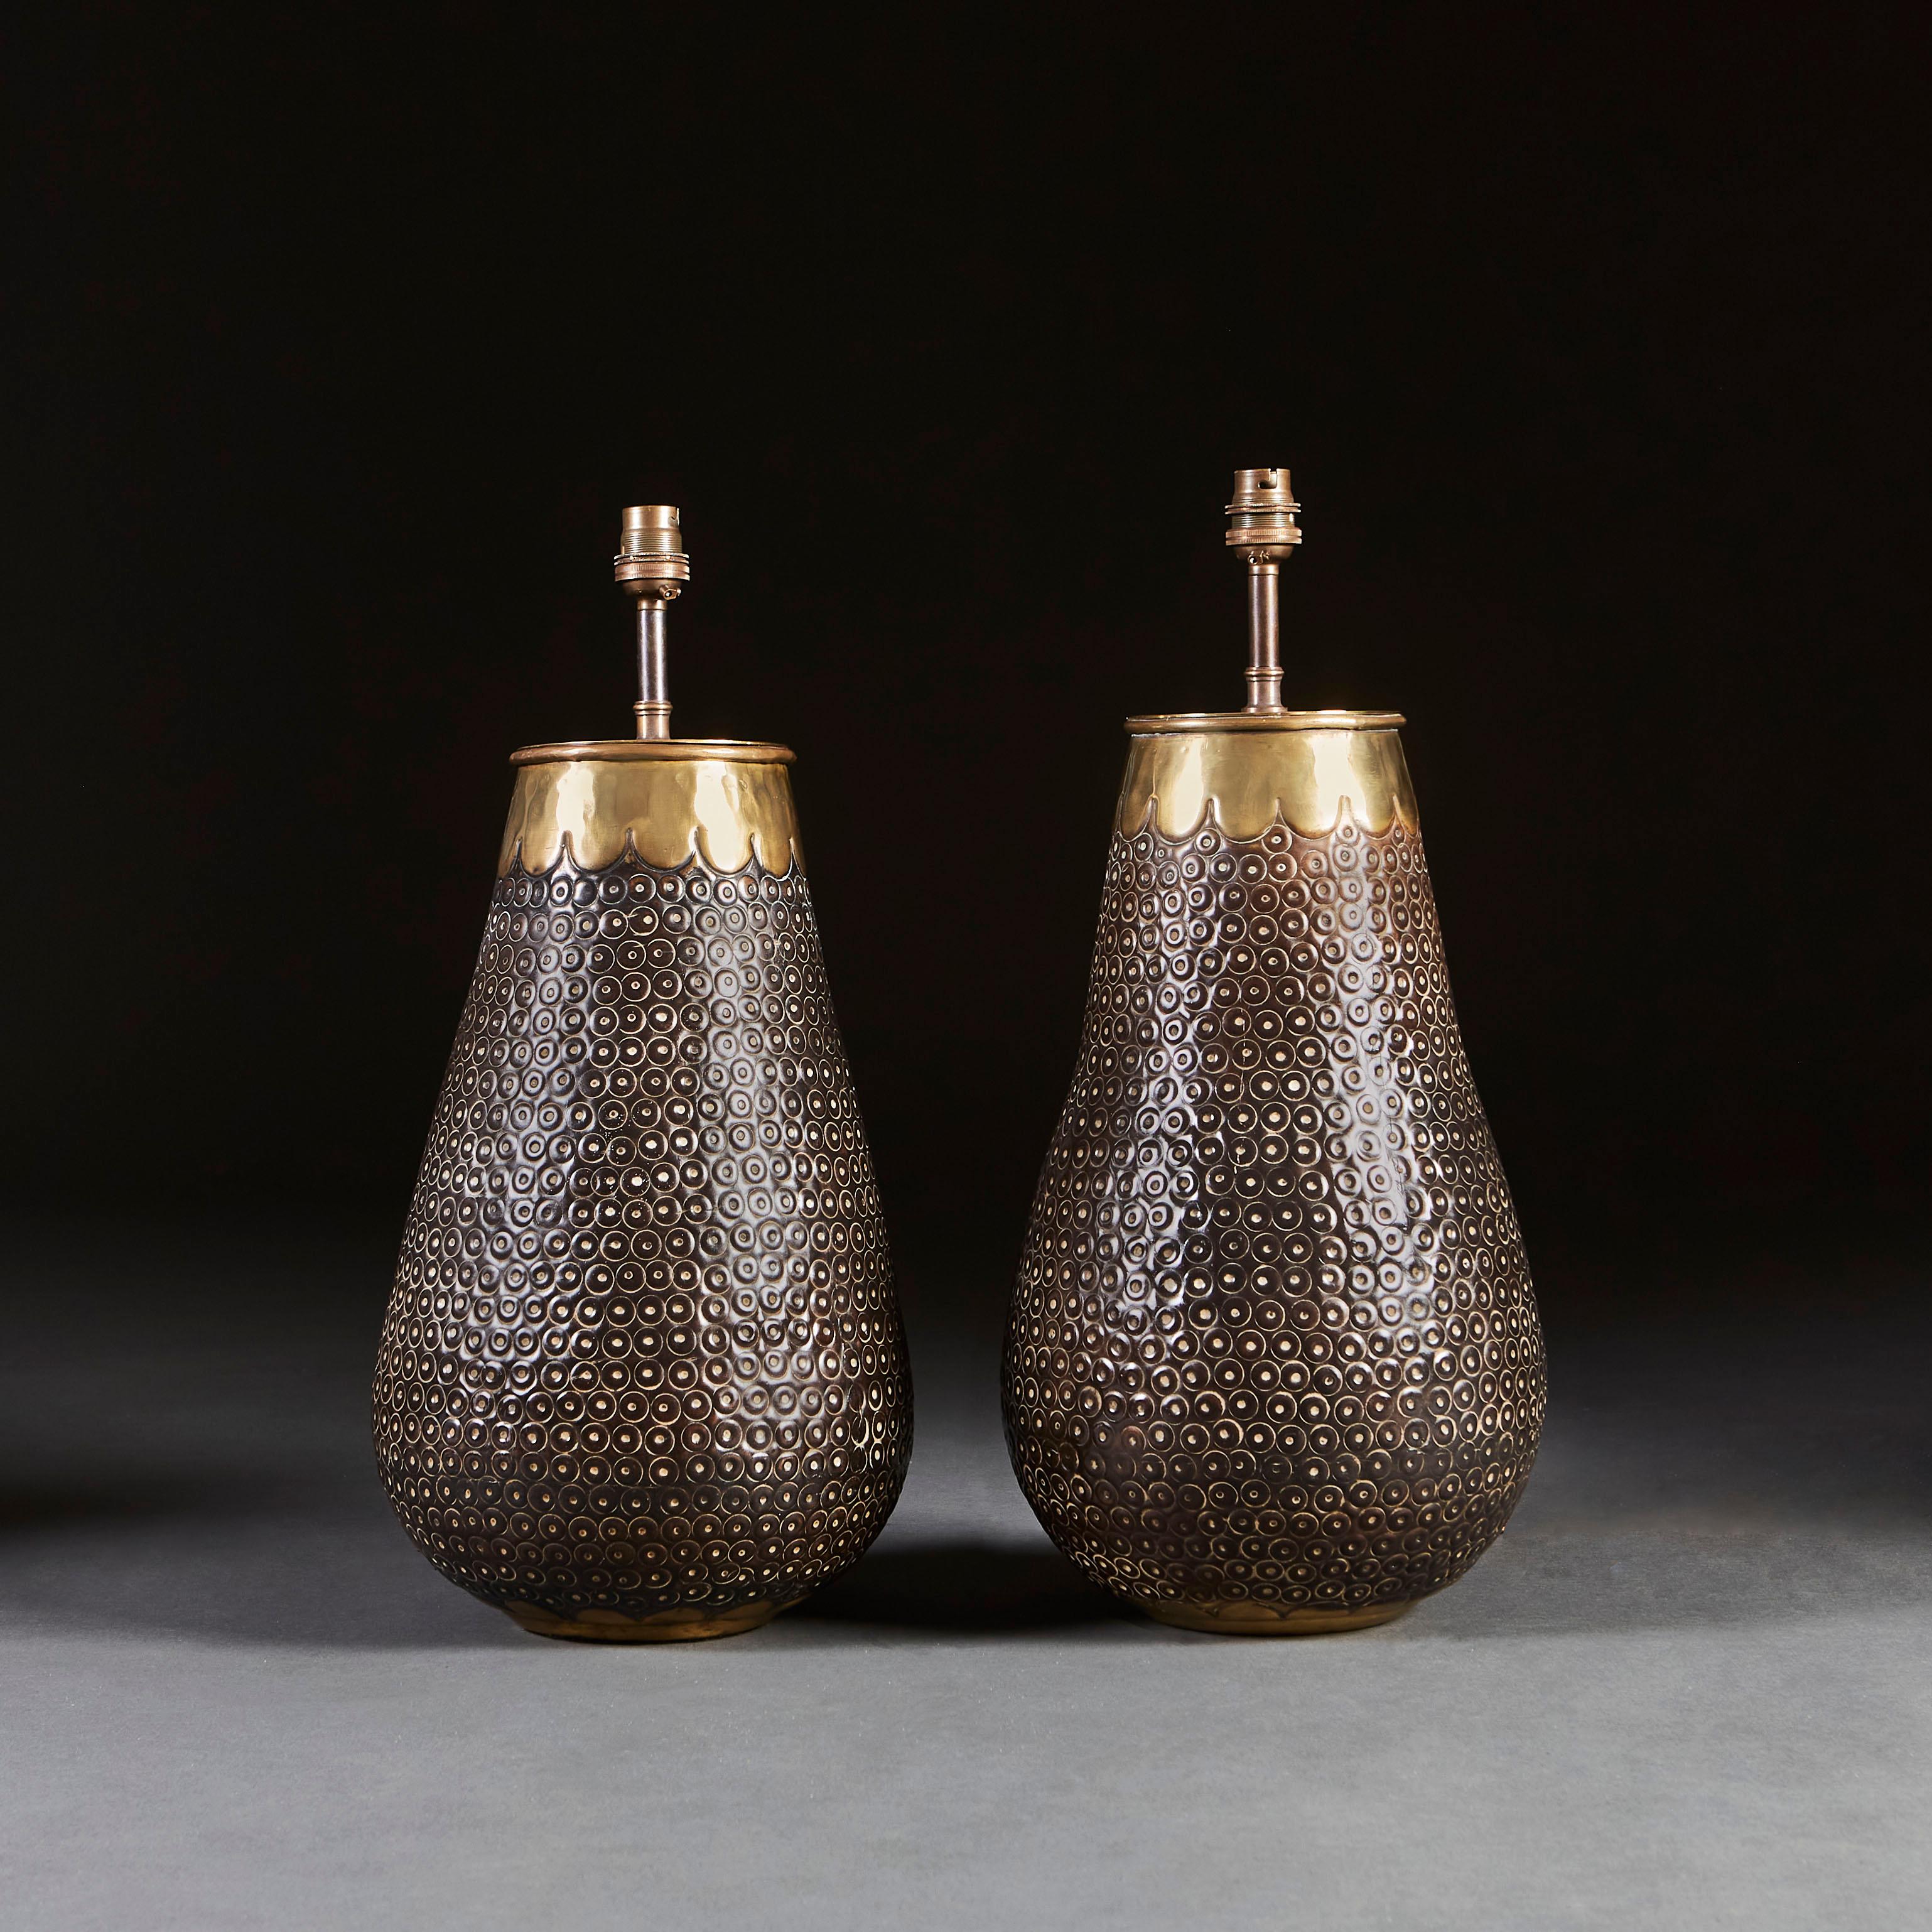 Paire de lampes en métal foncé plissé de forme balustre, les rebords avec des bandes de laiton contrastantes avec bord festonné.